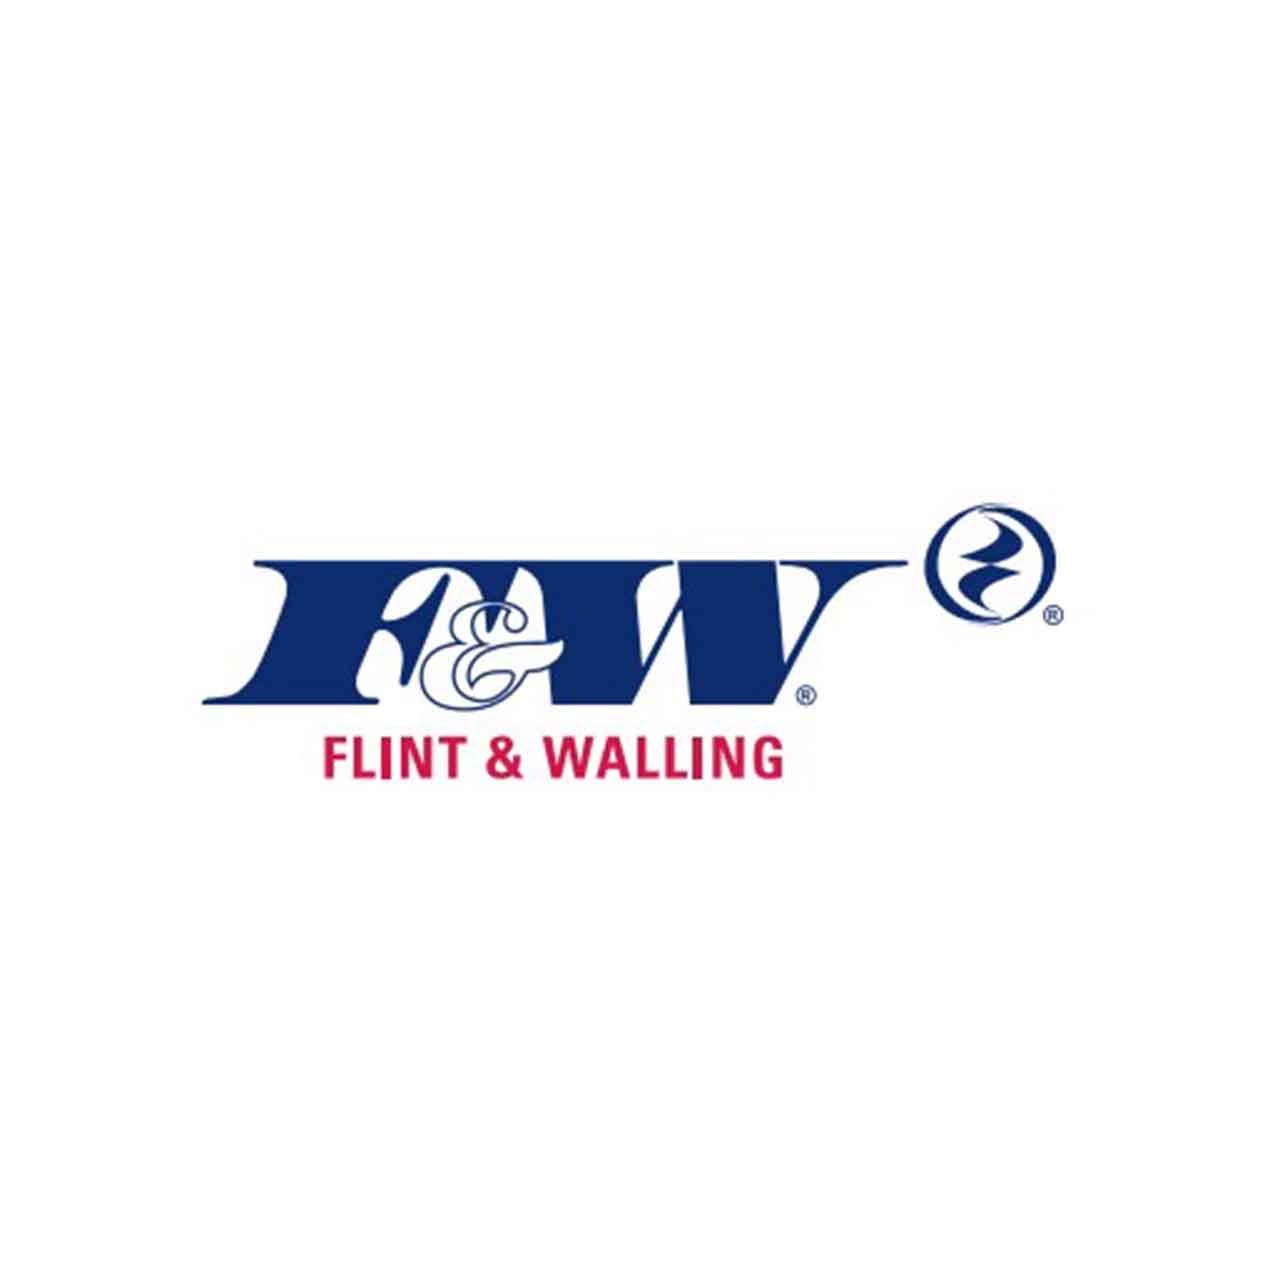 Flint & Walling